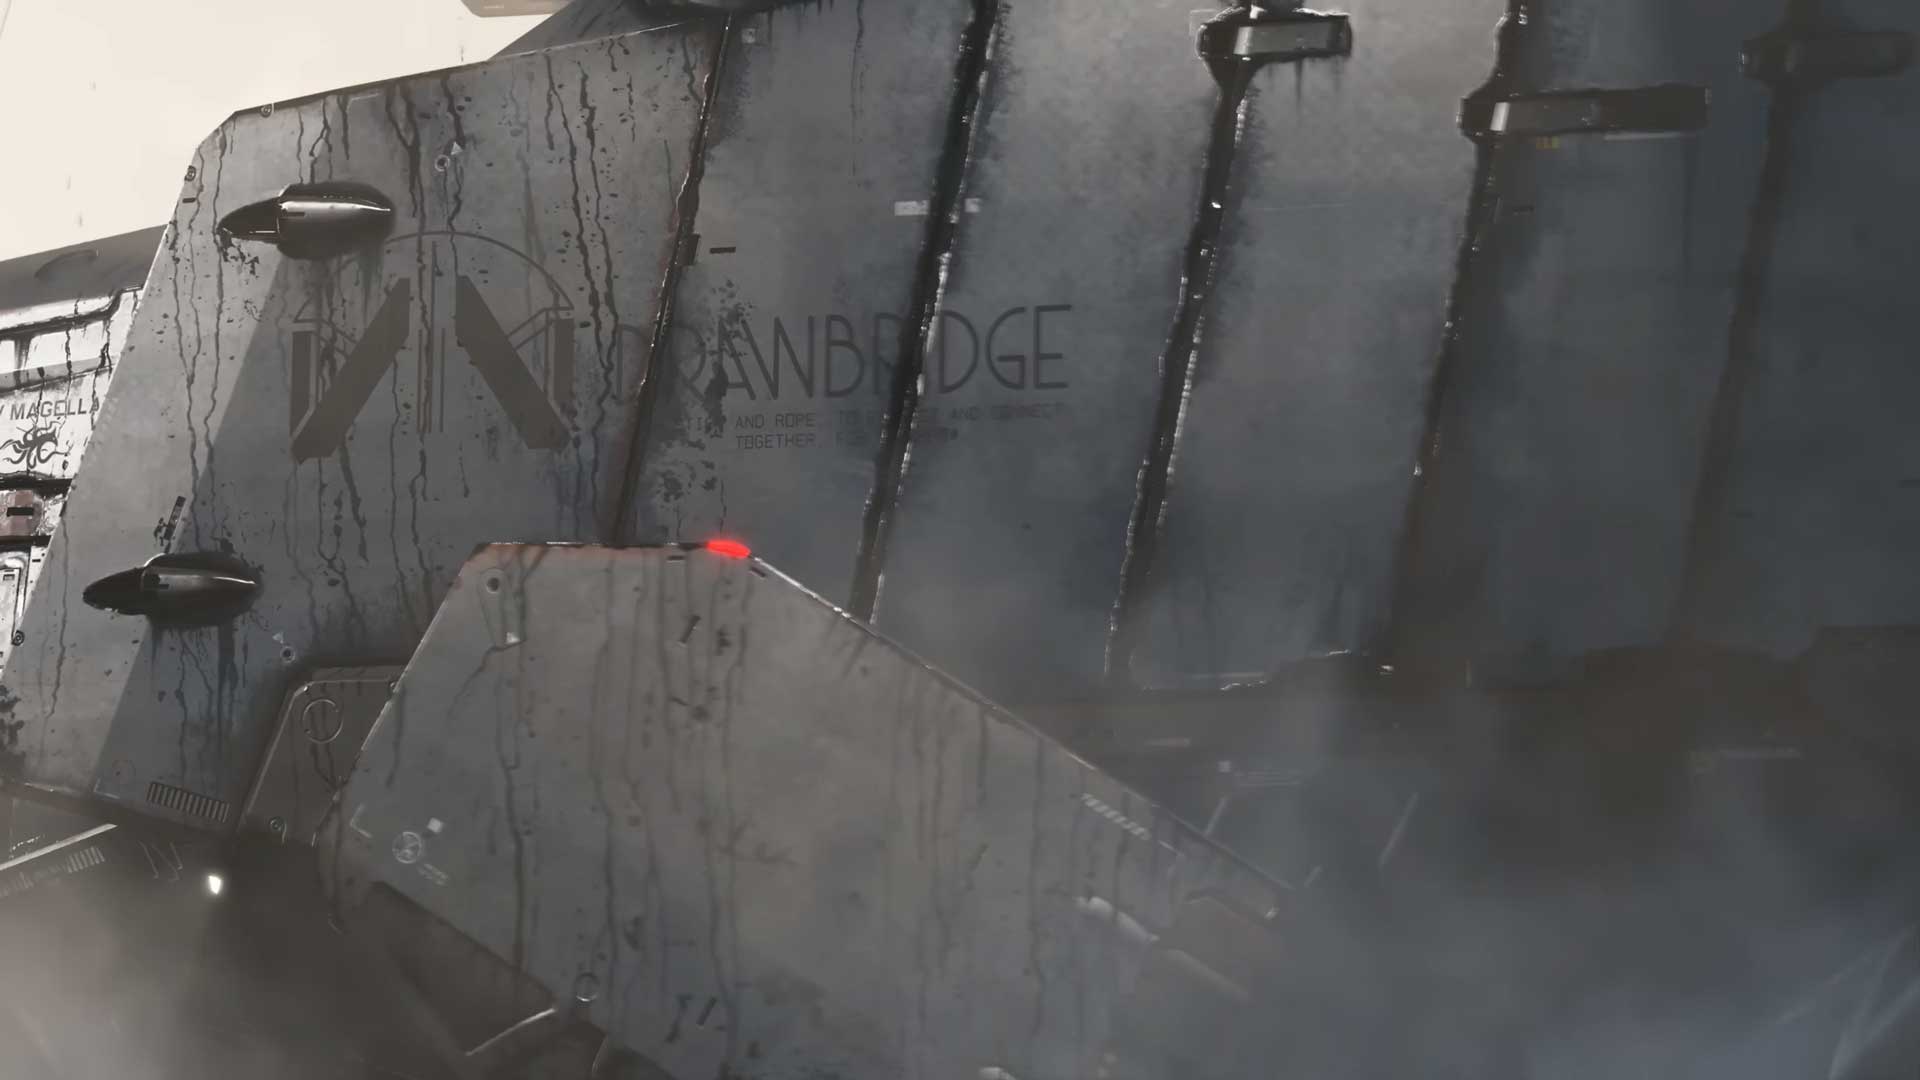 لوگو سازمان DrawBridge روی بدنه وسیله عجیب و غریب فرجایل در بازی دث استرندینگ ۲ کنسول پلی استیشن 5 سونی